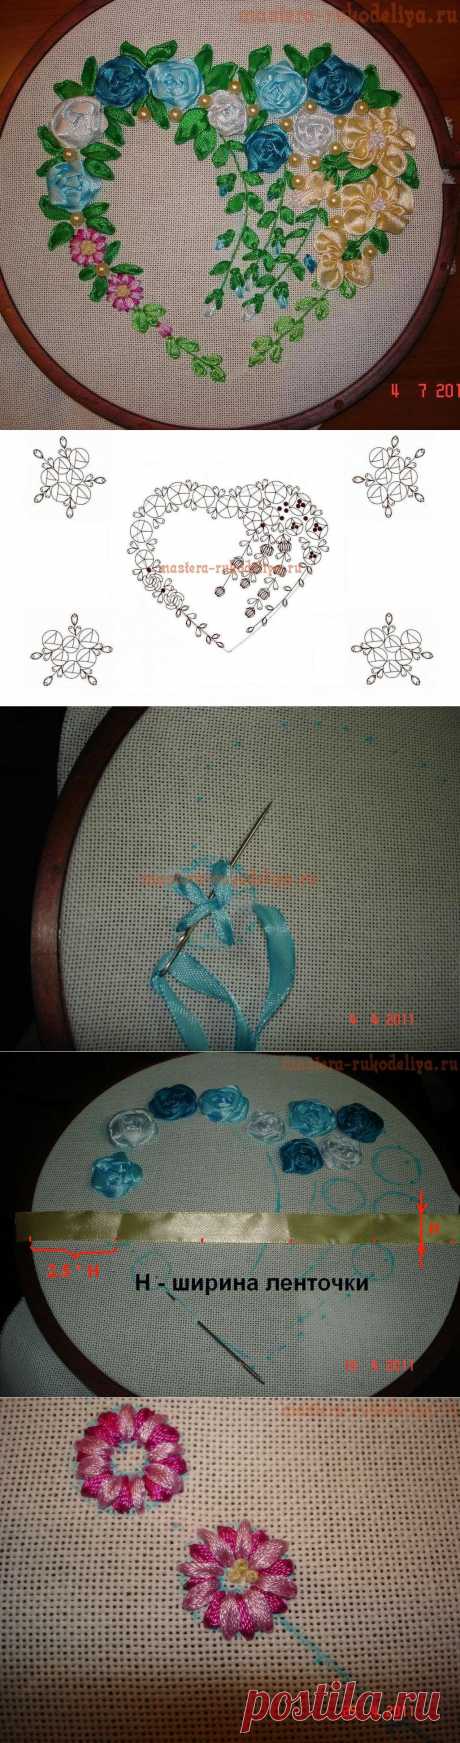 Практический урок по вышивке лентами от Ирины Лысенко.